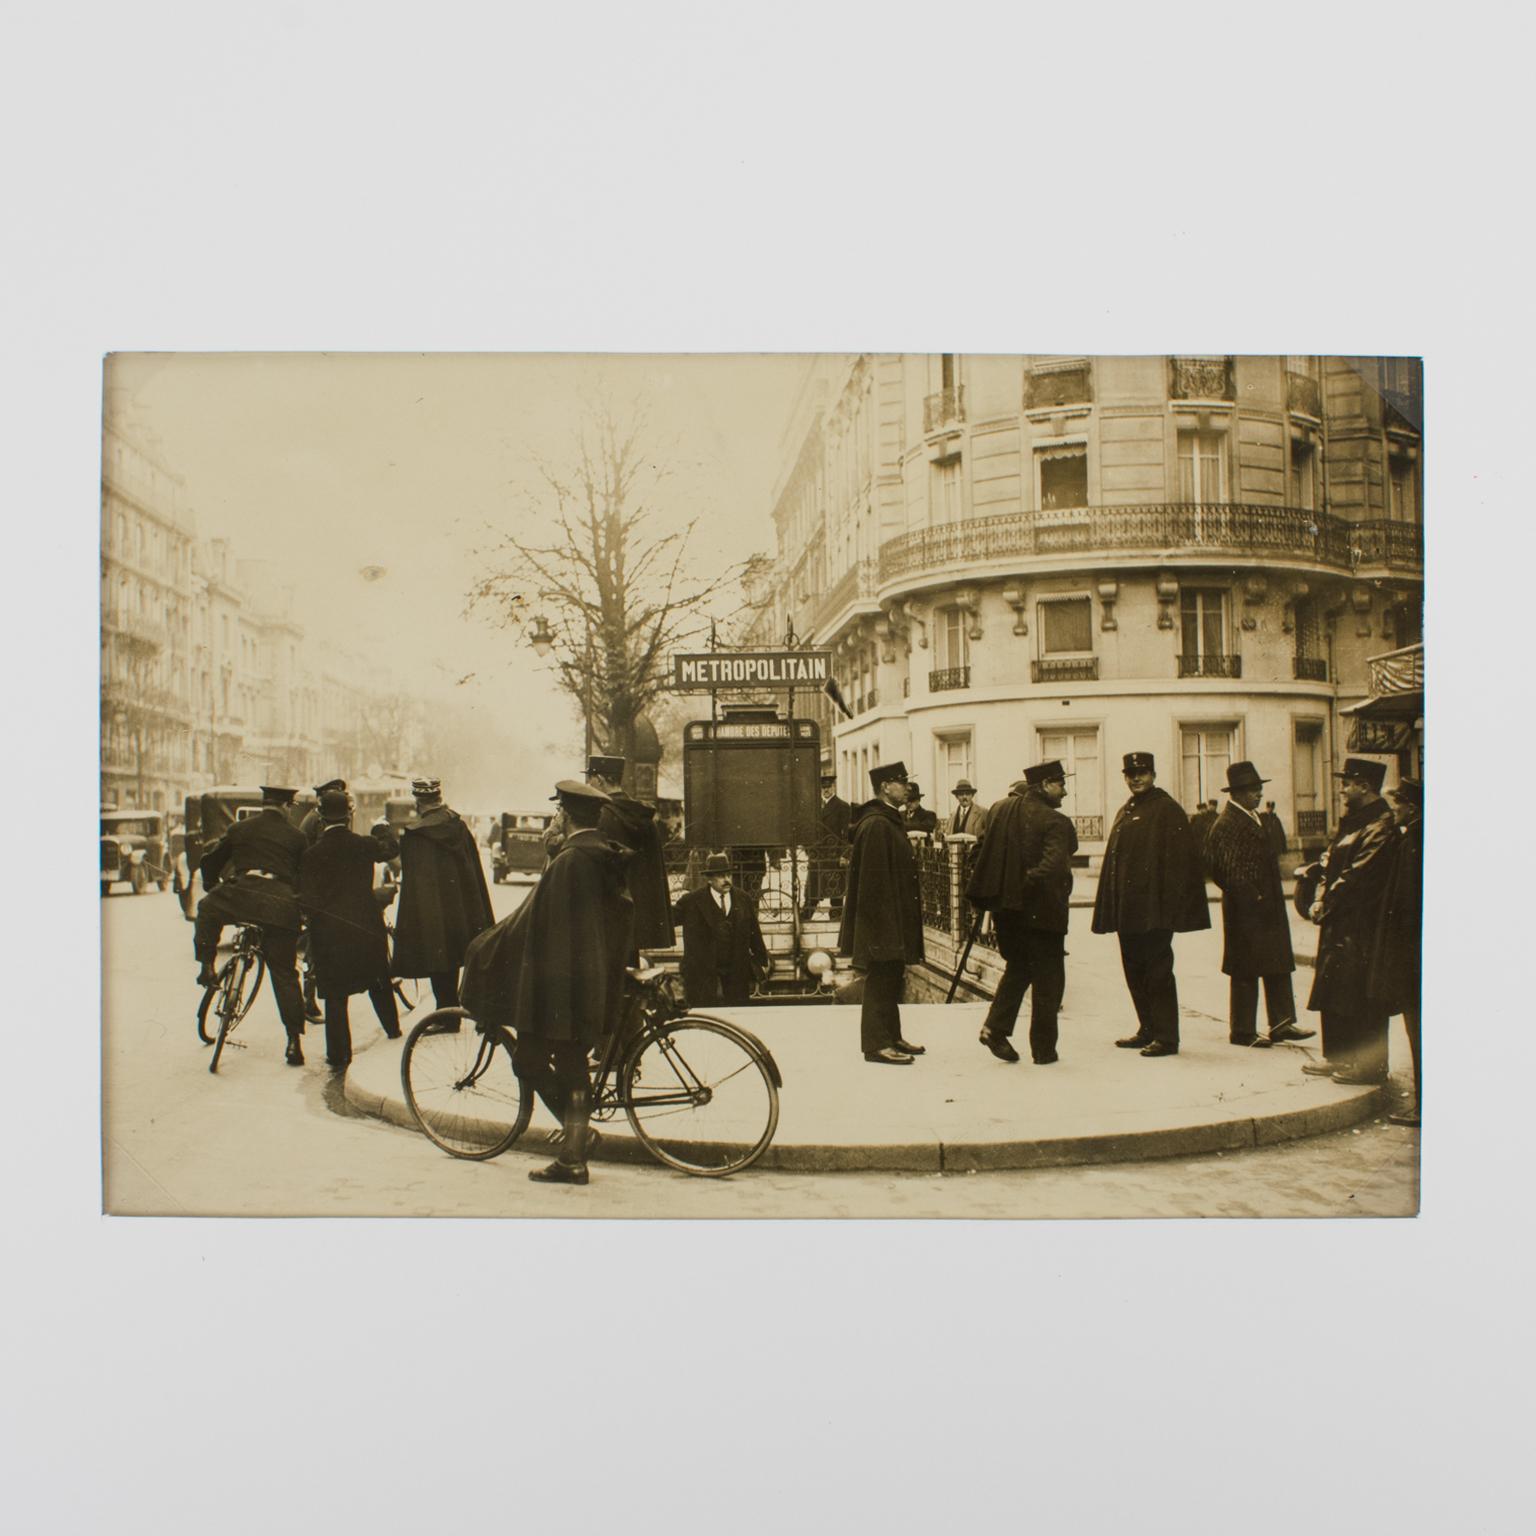 Polizisten in Paris, um 1930 – Silber-Gelatine-Schwarz-Weiß-Fotografie – Photograph von Press Agency Keystone View Co.